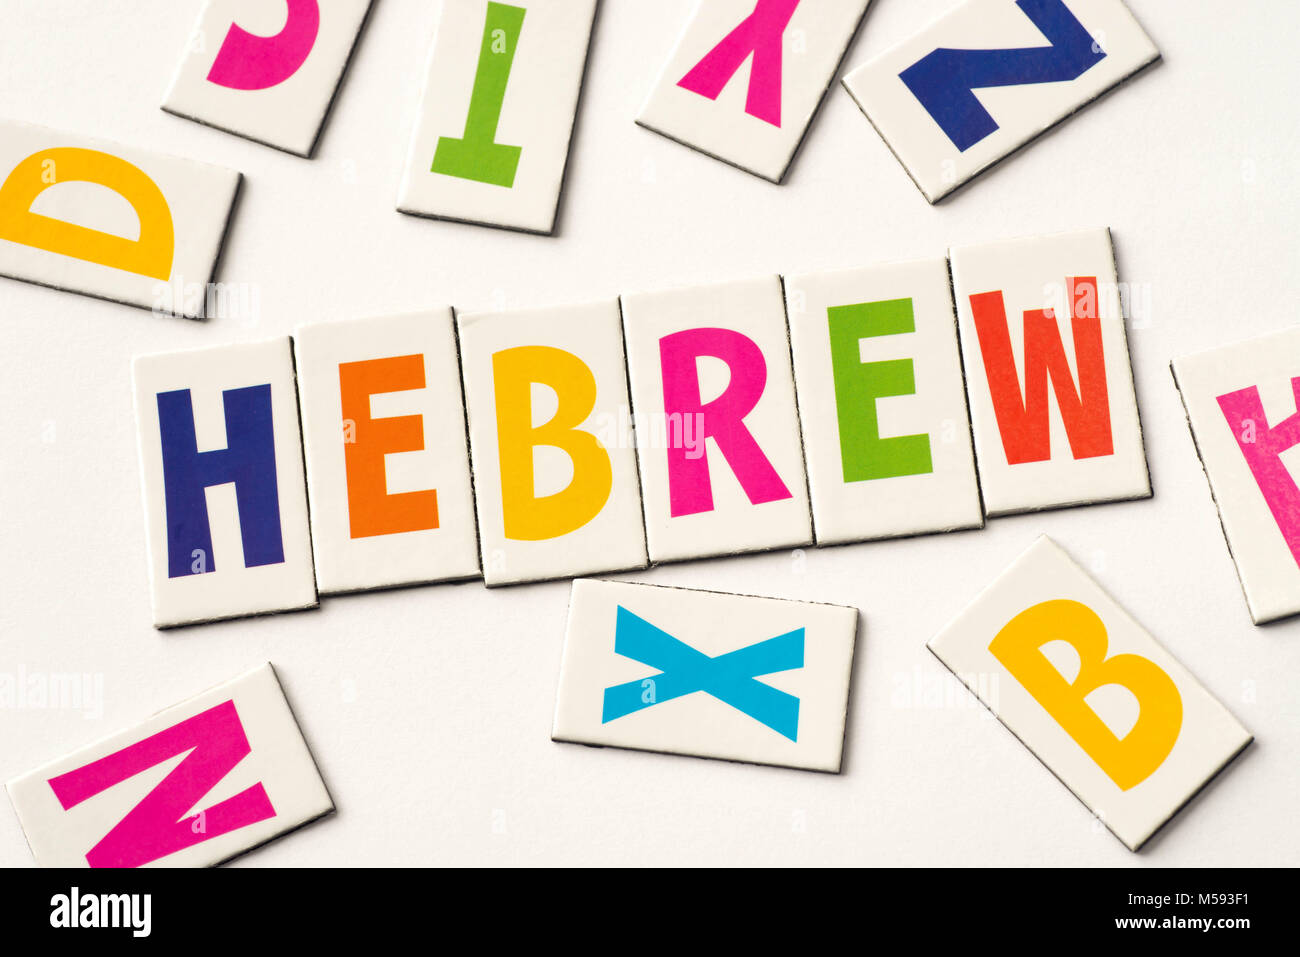 Mot hébreu faite de lettres colorées sur fond blanc Banque D'Images